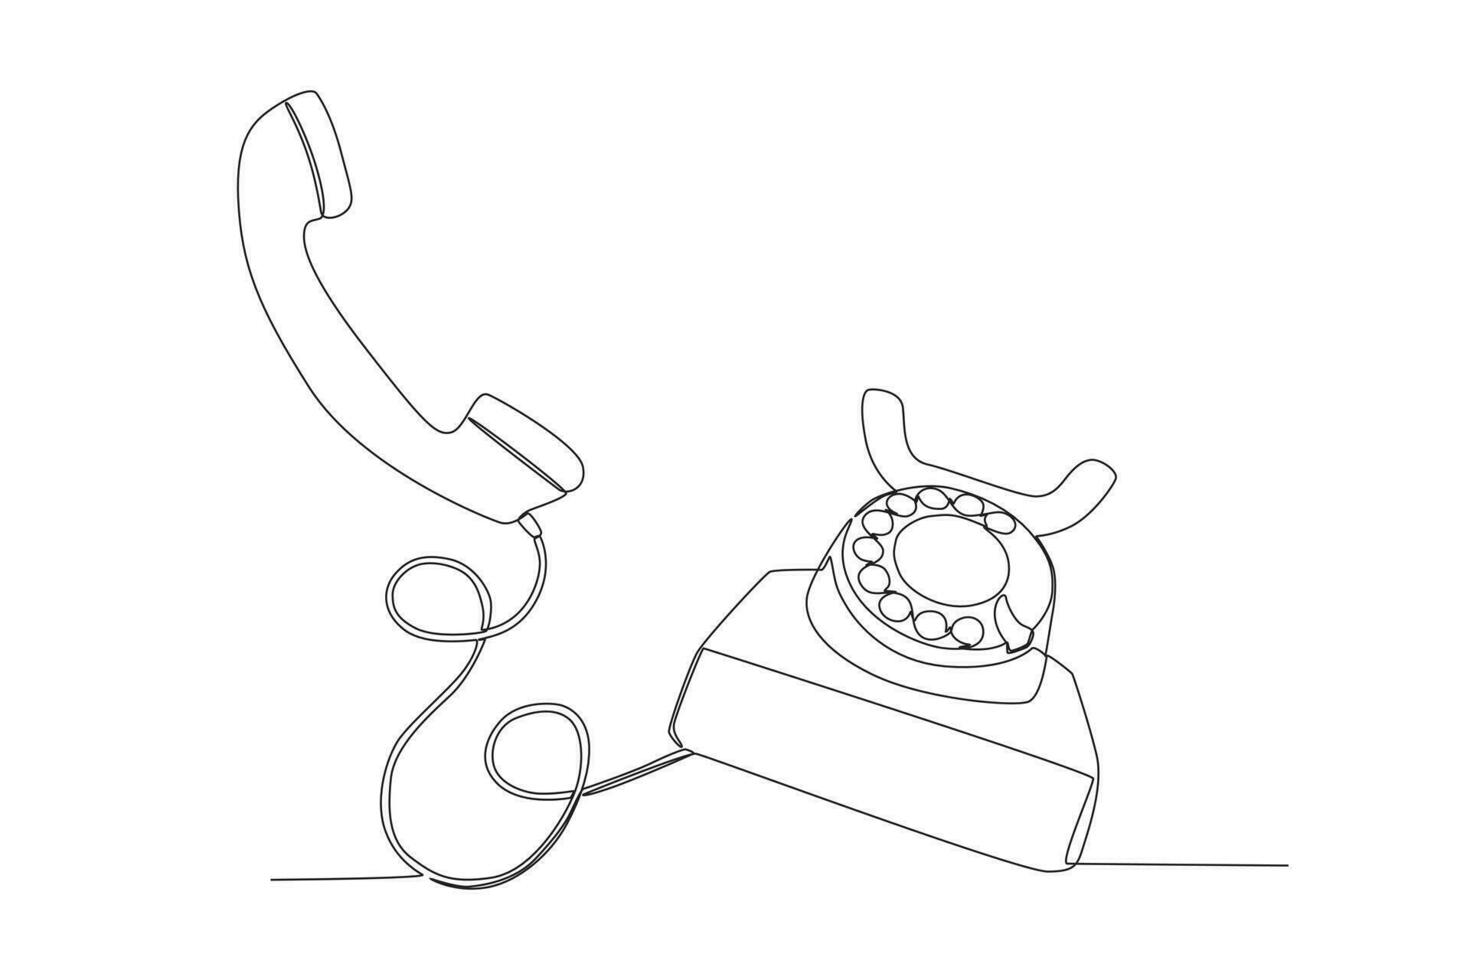 een doorlopende lijntekening van oude vintage antieke analoge bureautelefoon om te communiceren. retro klassiek telecommunicatieapparaat concept enkele lijn tekenen grafisch ontwerp vectorillustratie vector